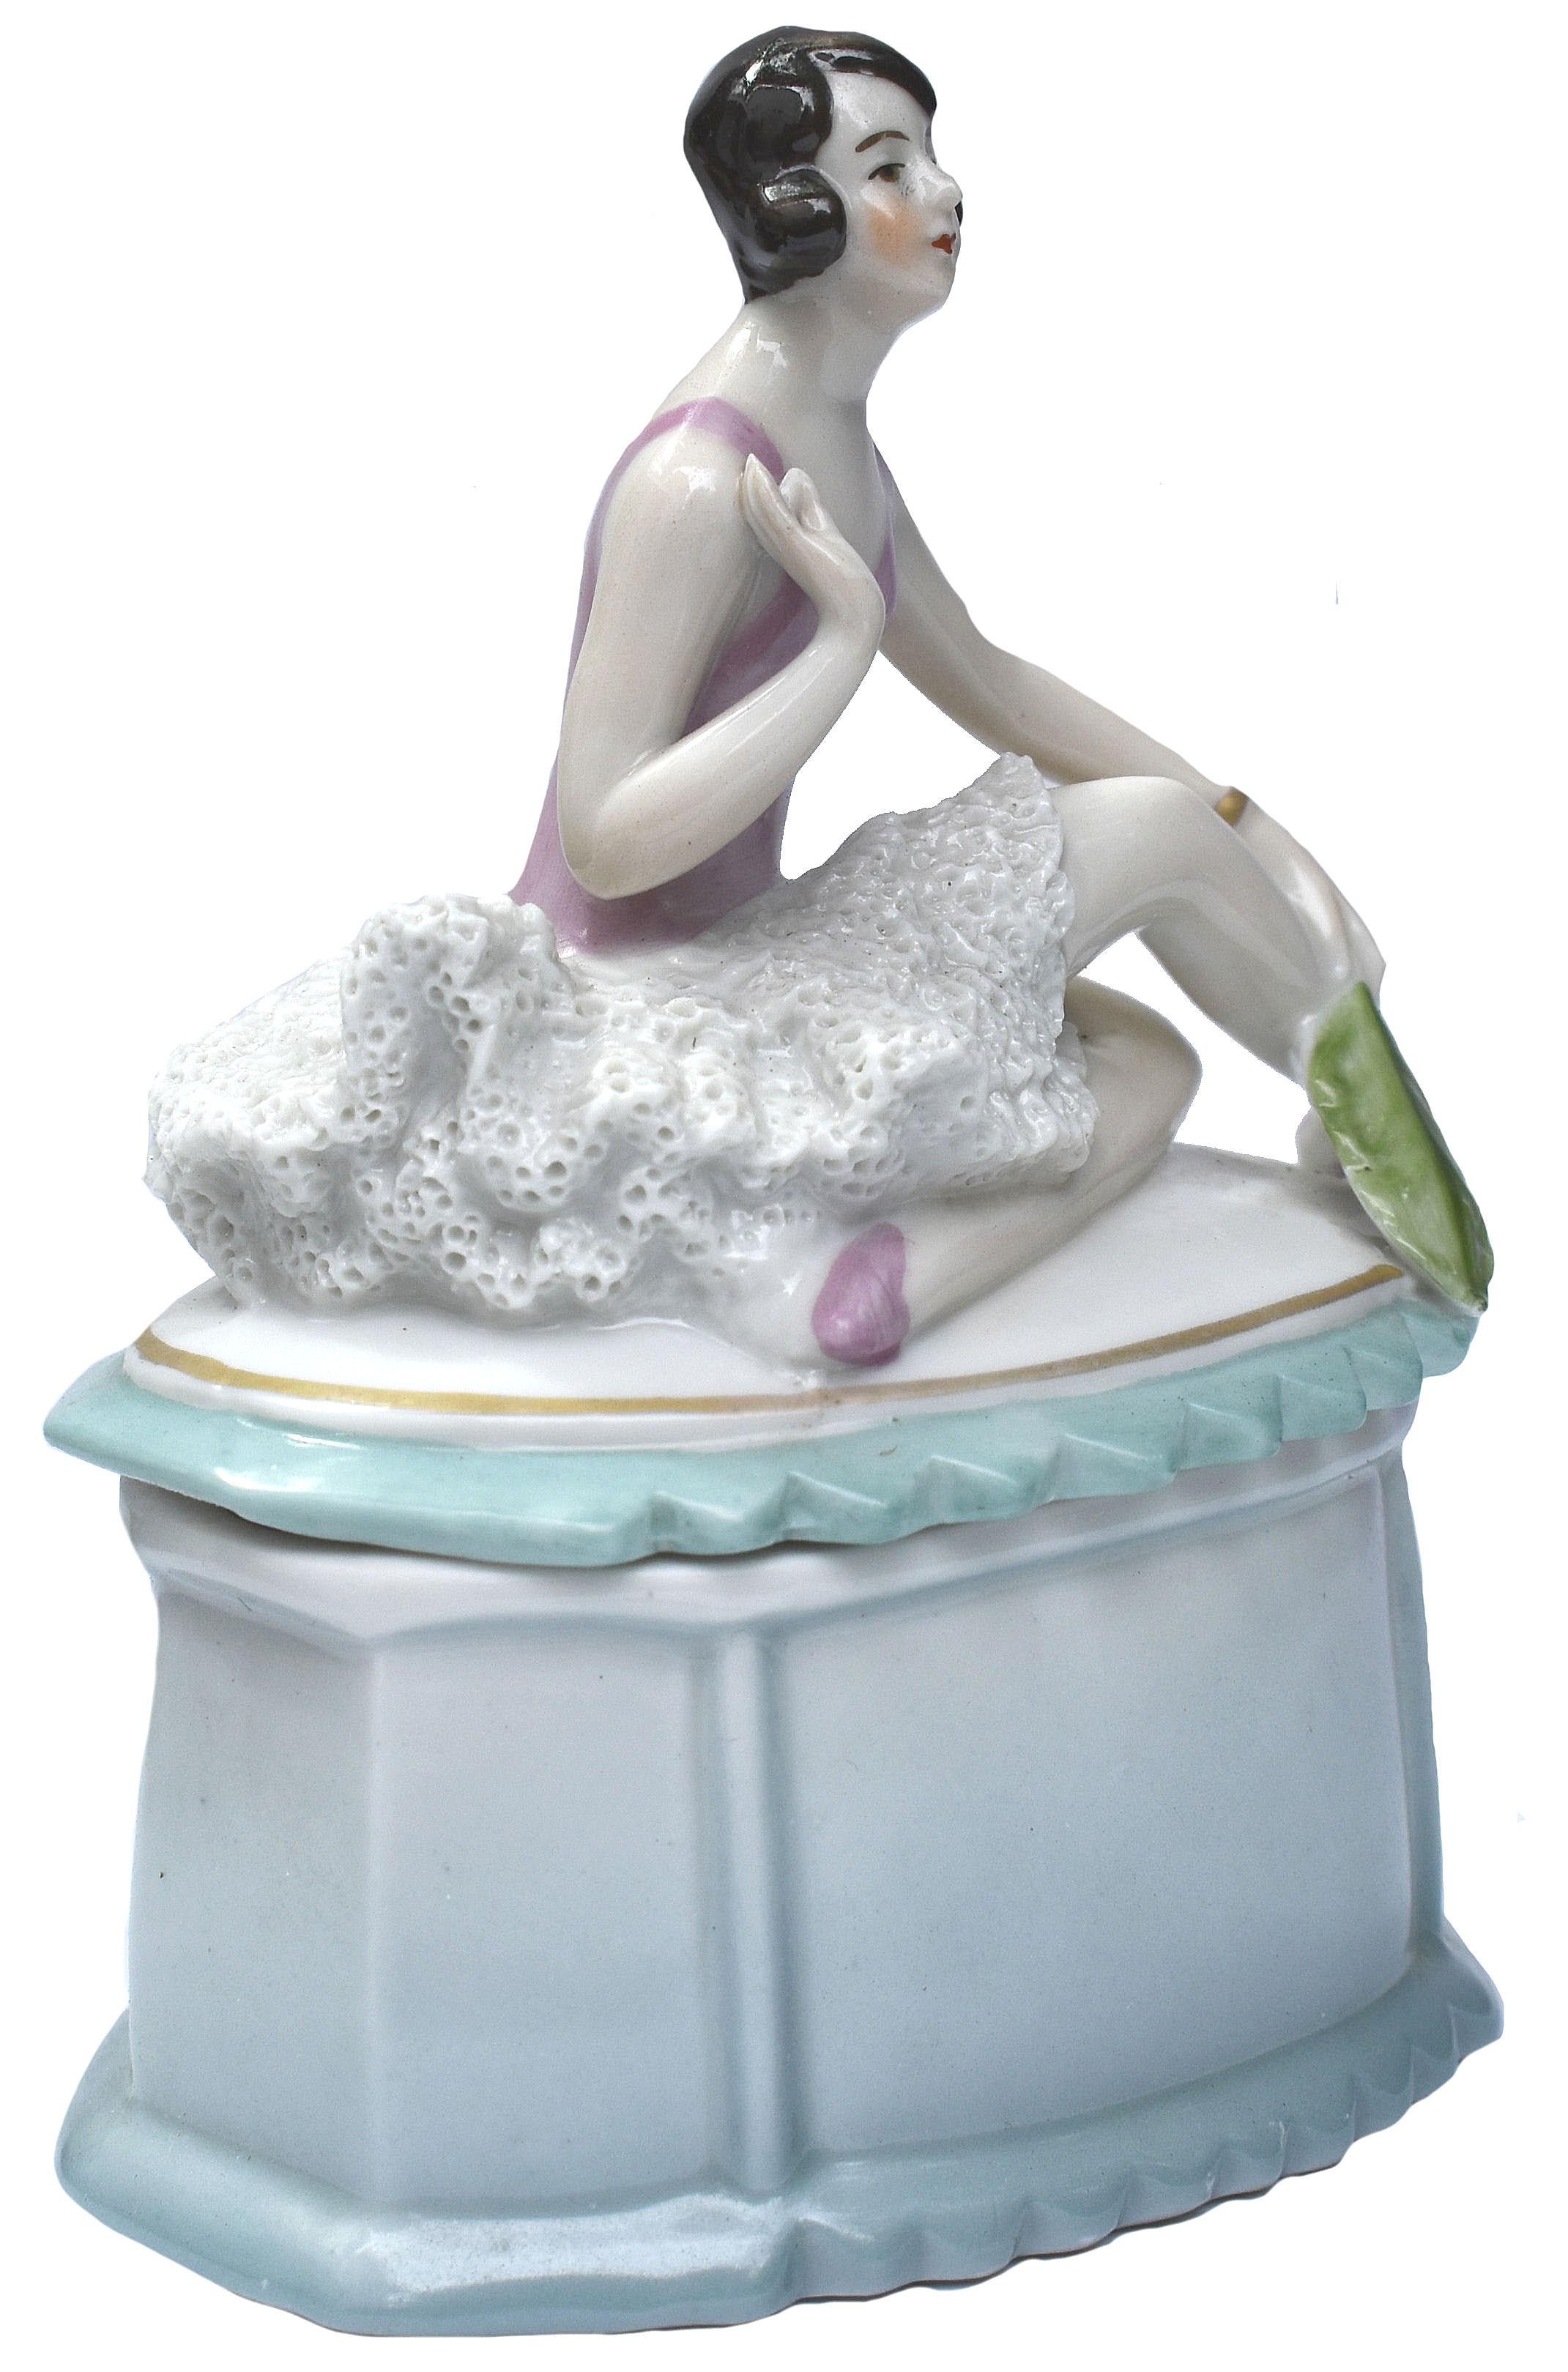 Cette boîte à poudre en céramique Art déco des années 1930 est frappante et assez rare. Elle représente une danseuse stylisée assise sur le couvercle d'une boîte en porcelaine. Magnifique coloration et détails. Un design rare et très recherché. Elle